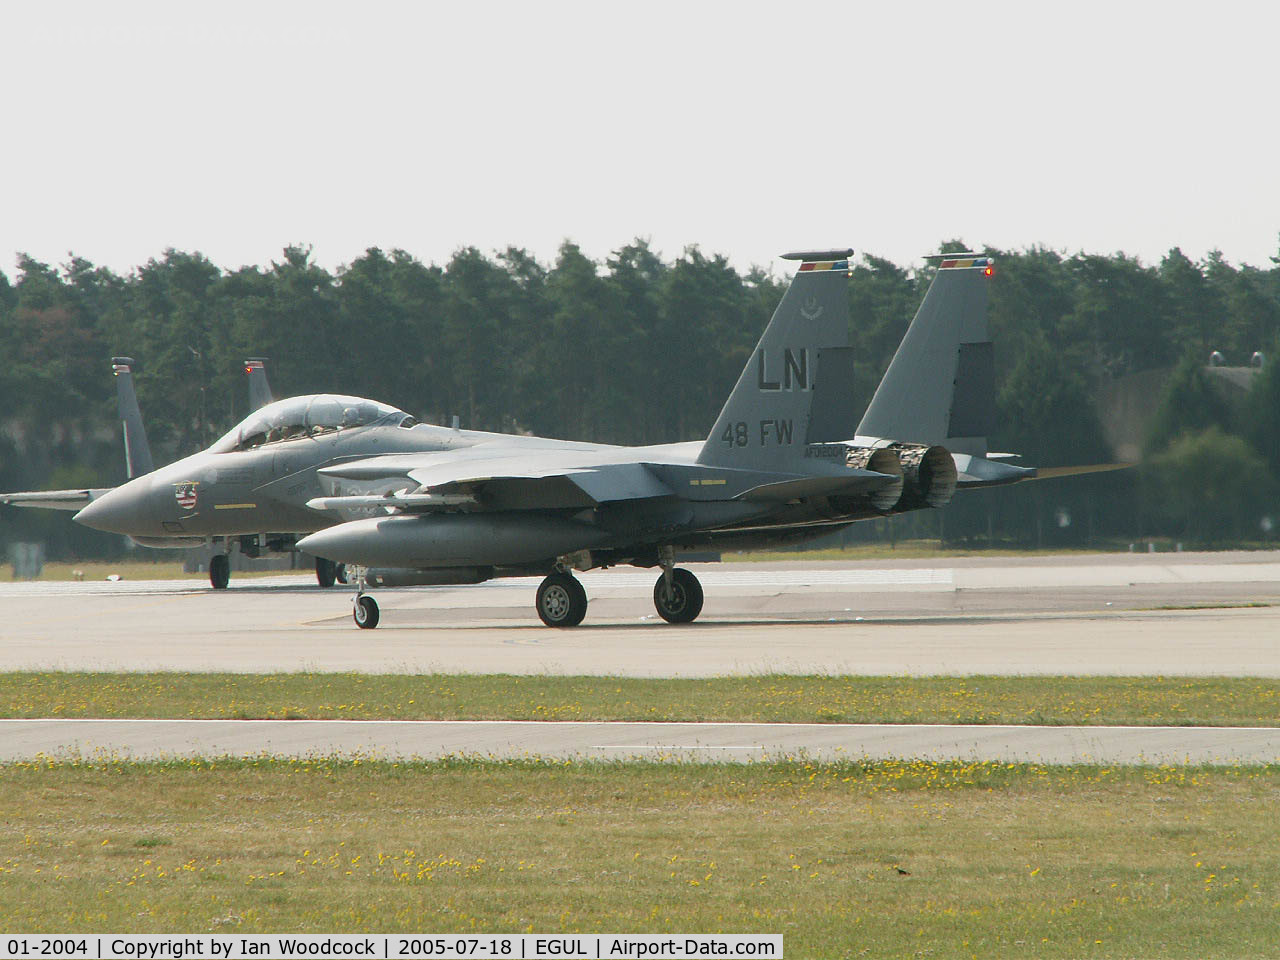 01-2004, 2001 McDonnell Douglas F-15E Strike Eagle C/N 1375/E236, McDonnell-Douglas F-15E/48 FW/RAF Lakenheath 2005